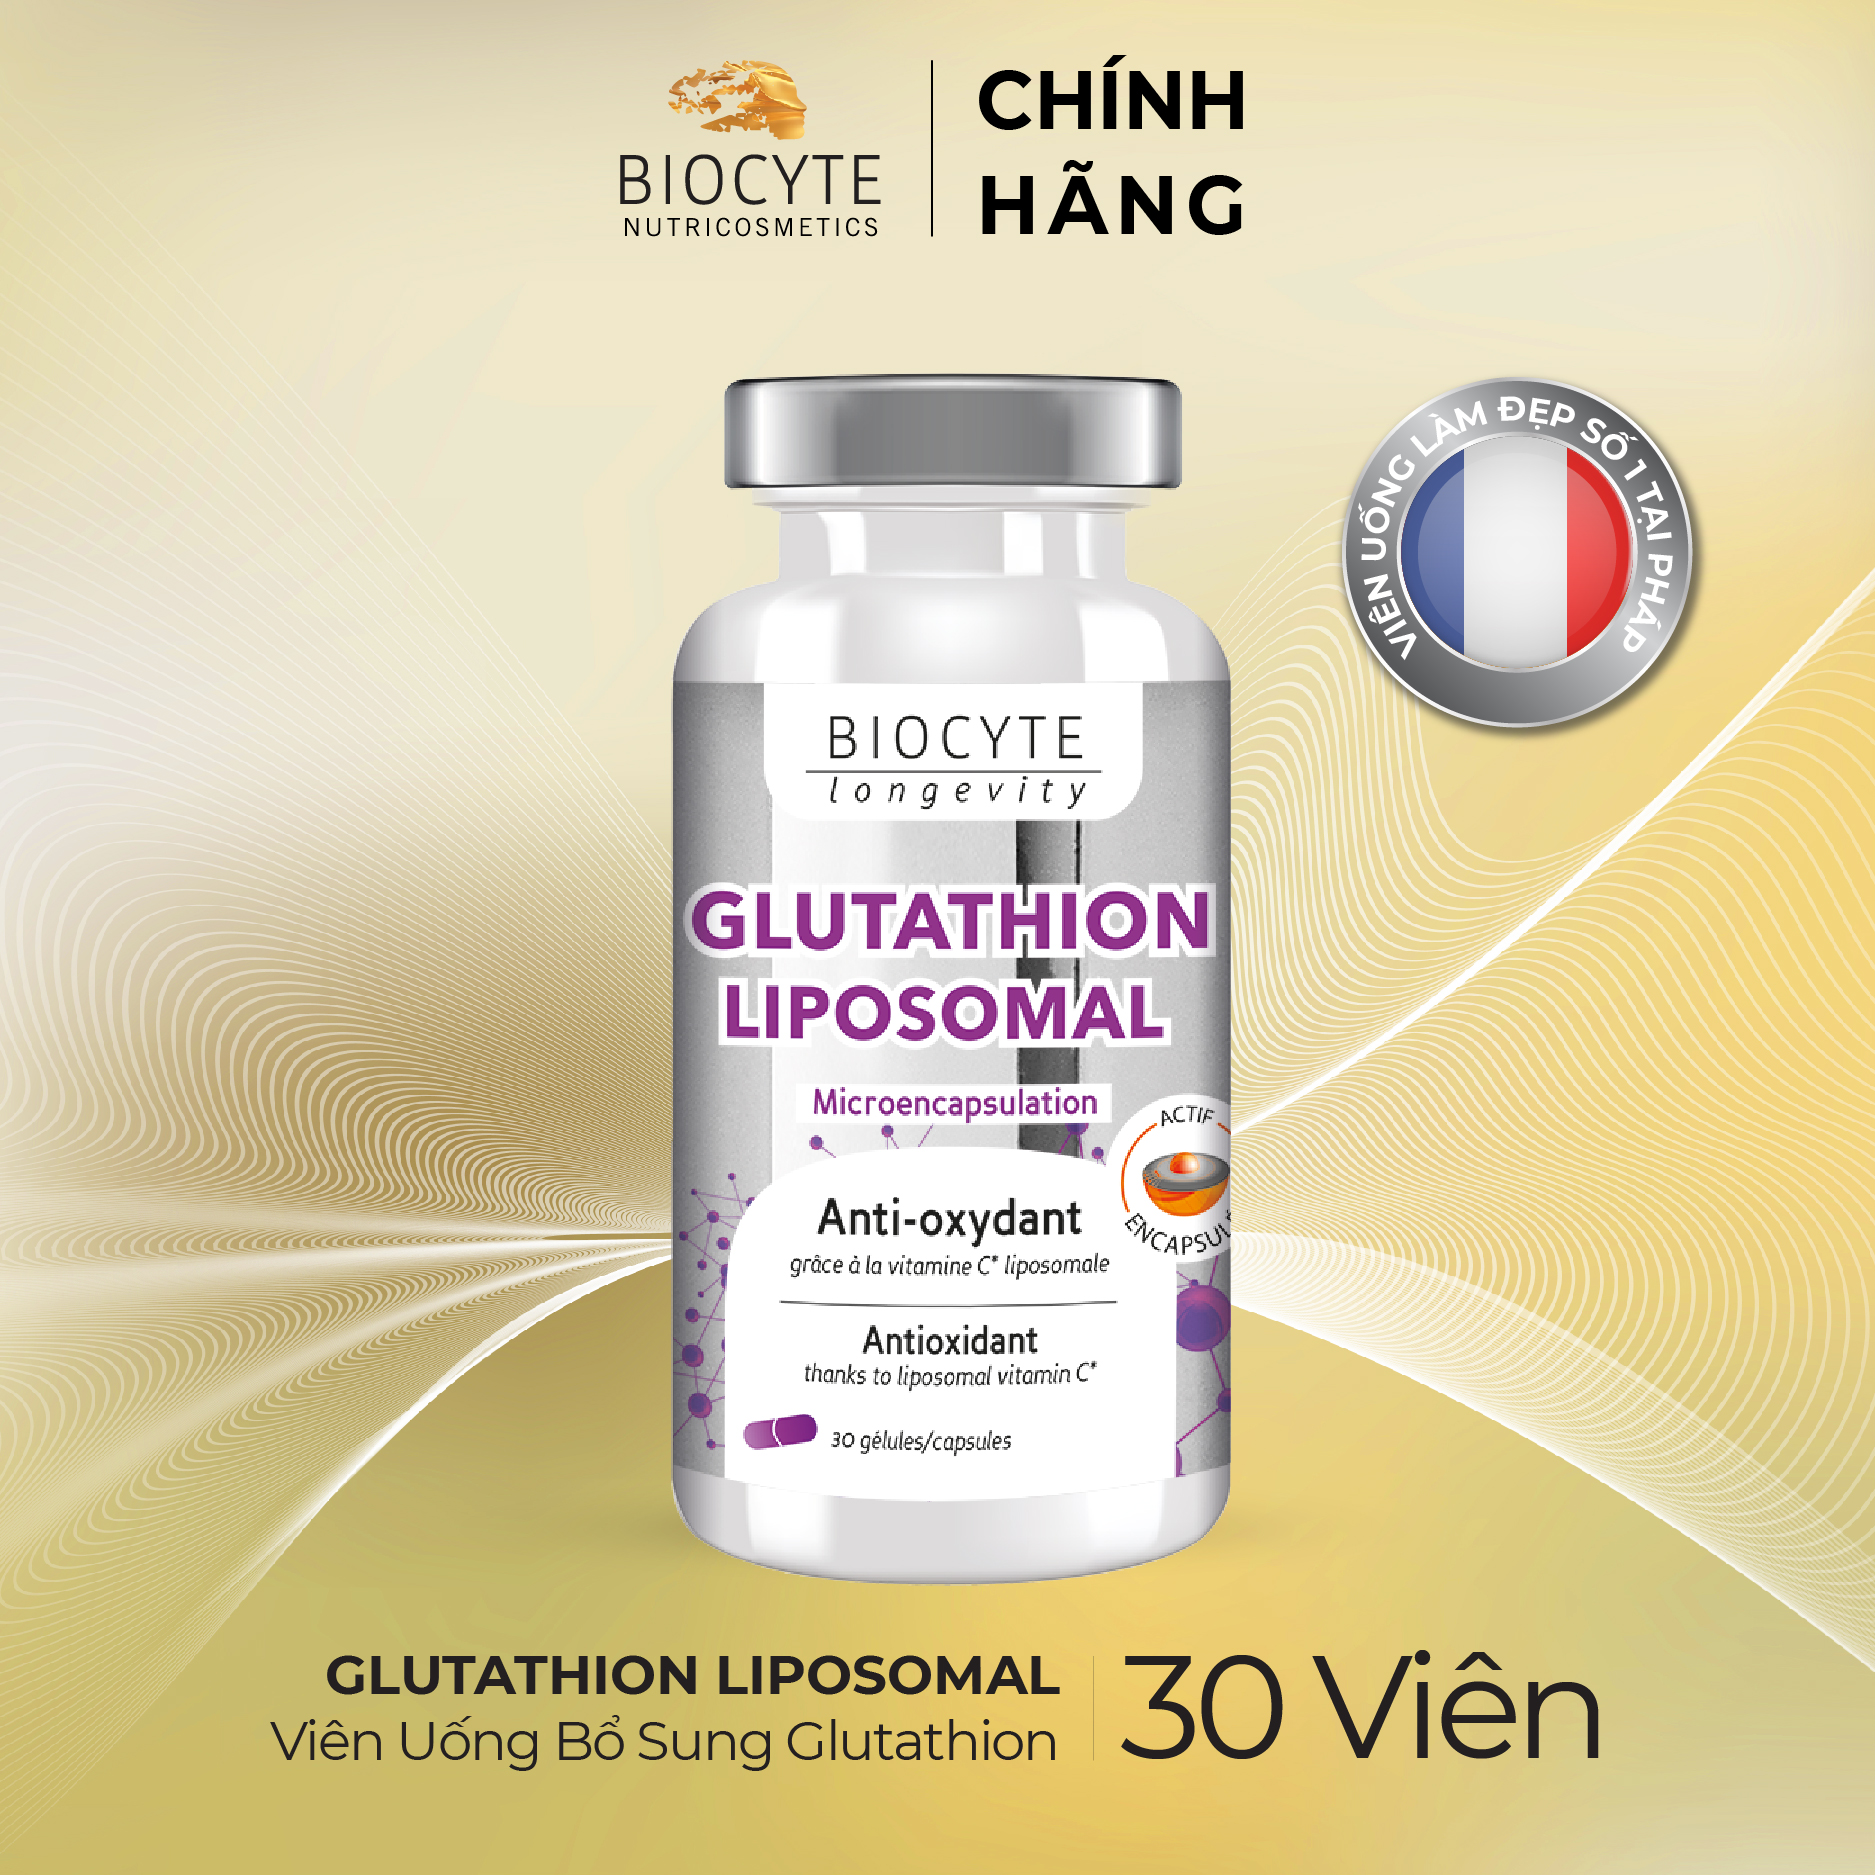 B19 Viên Uống Bổ Sung Glutathion – Glutathion Liposomal